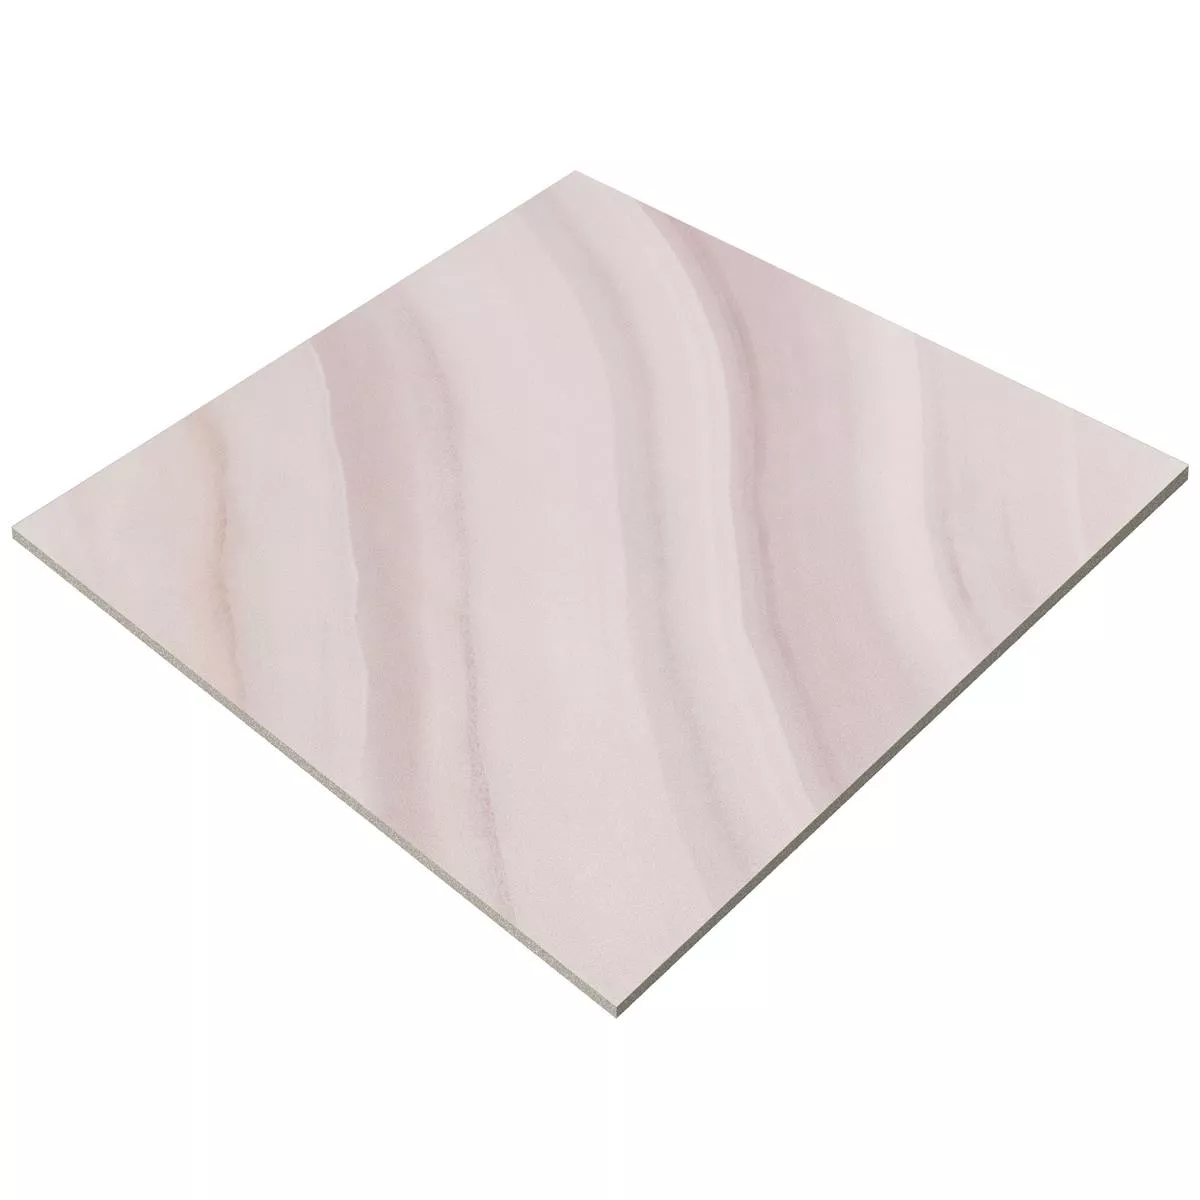 Pavimentos Aspecto de Piedra Almeria Rosa Oscuro 18,5x18,5cm 